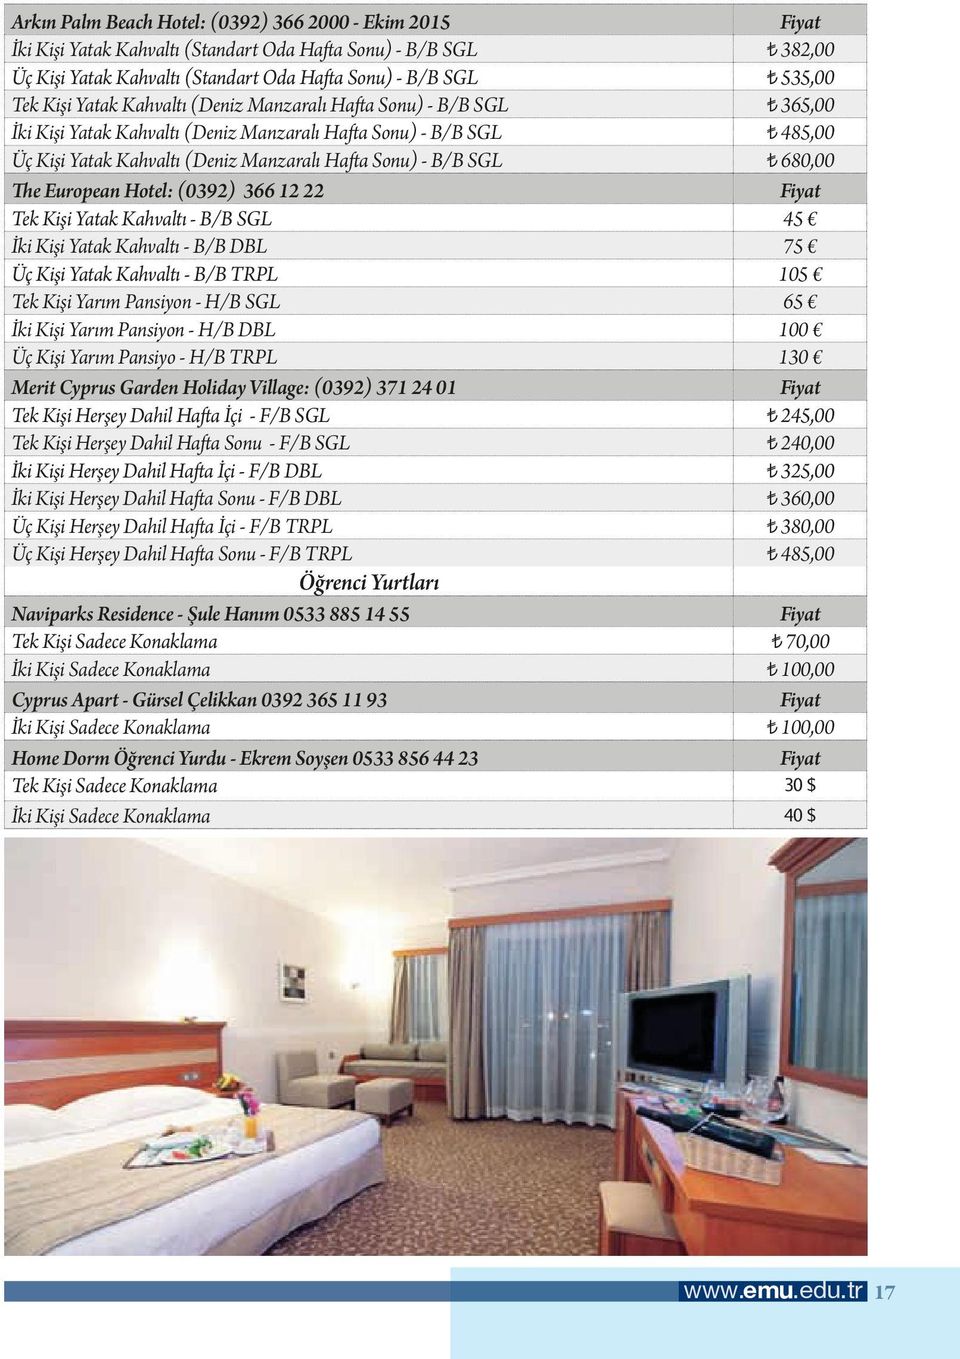 The European Hotel: (0392) 366 12 22 Fiyat Tek Kişi Yatak Kahvaltı - B/B SGL 45 İki Kişi Yatak Kahvaltı - B/B DBL 75 Üç Kişi Yatak Kahvaltı - B/B TRPL 105 Tek Kişi Yarım Pansiyon - H/B SGL 65 İki